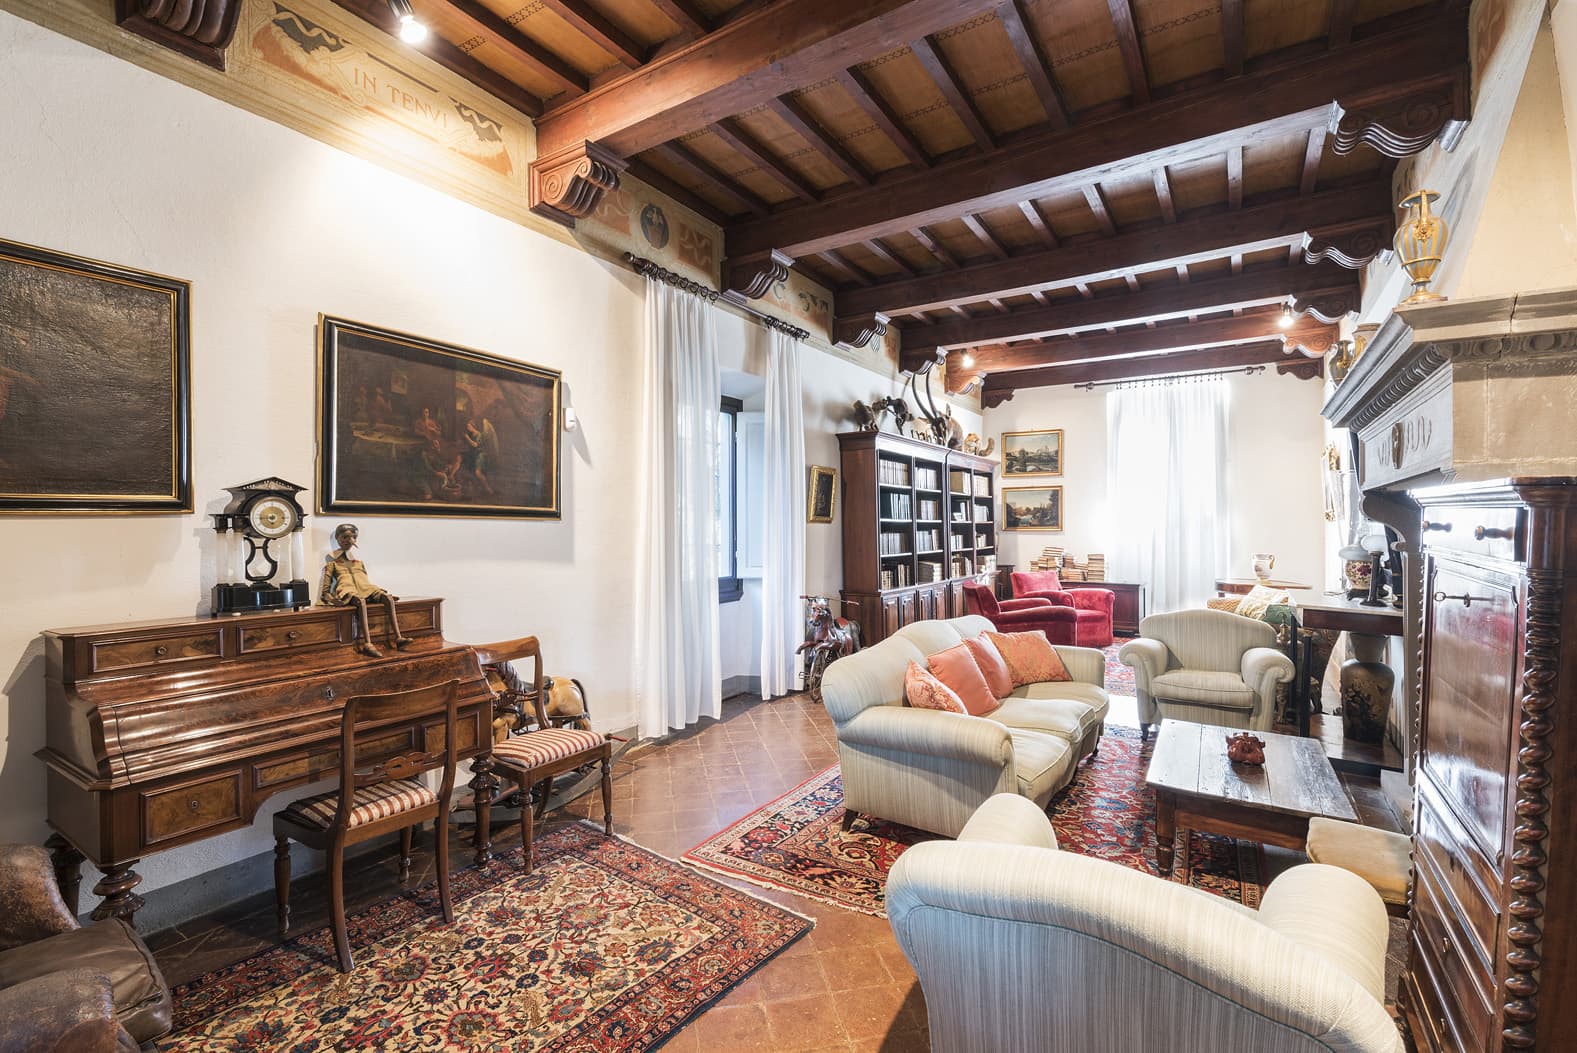  Bedroom Villa For Sale Borgo In Chianti Lp0793 148d3e5030dffe00.jpg